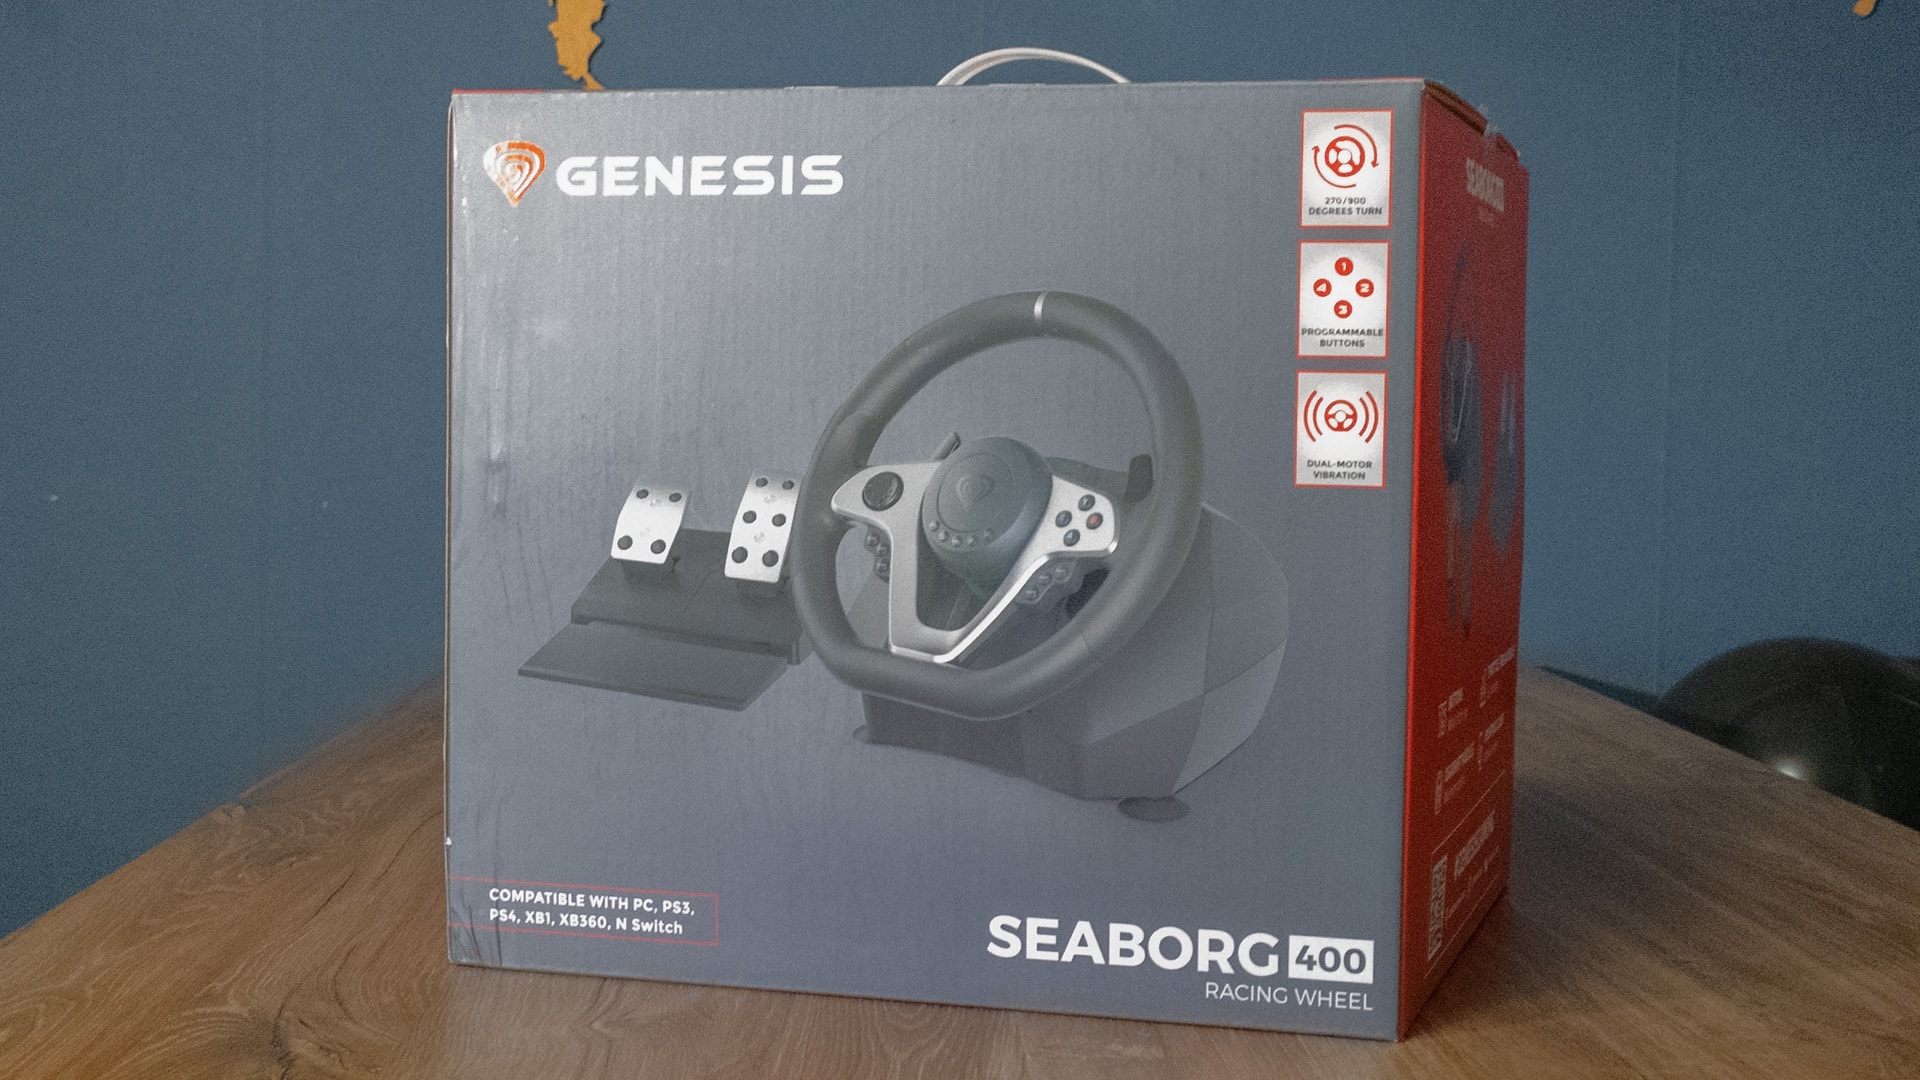 Genesis Seaborg 400